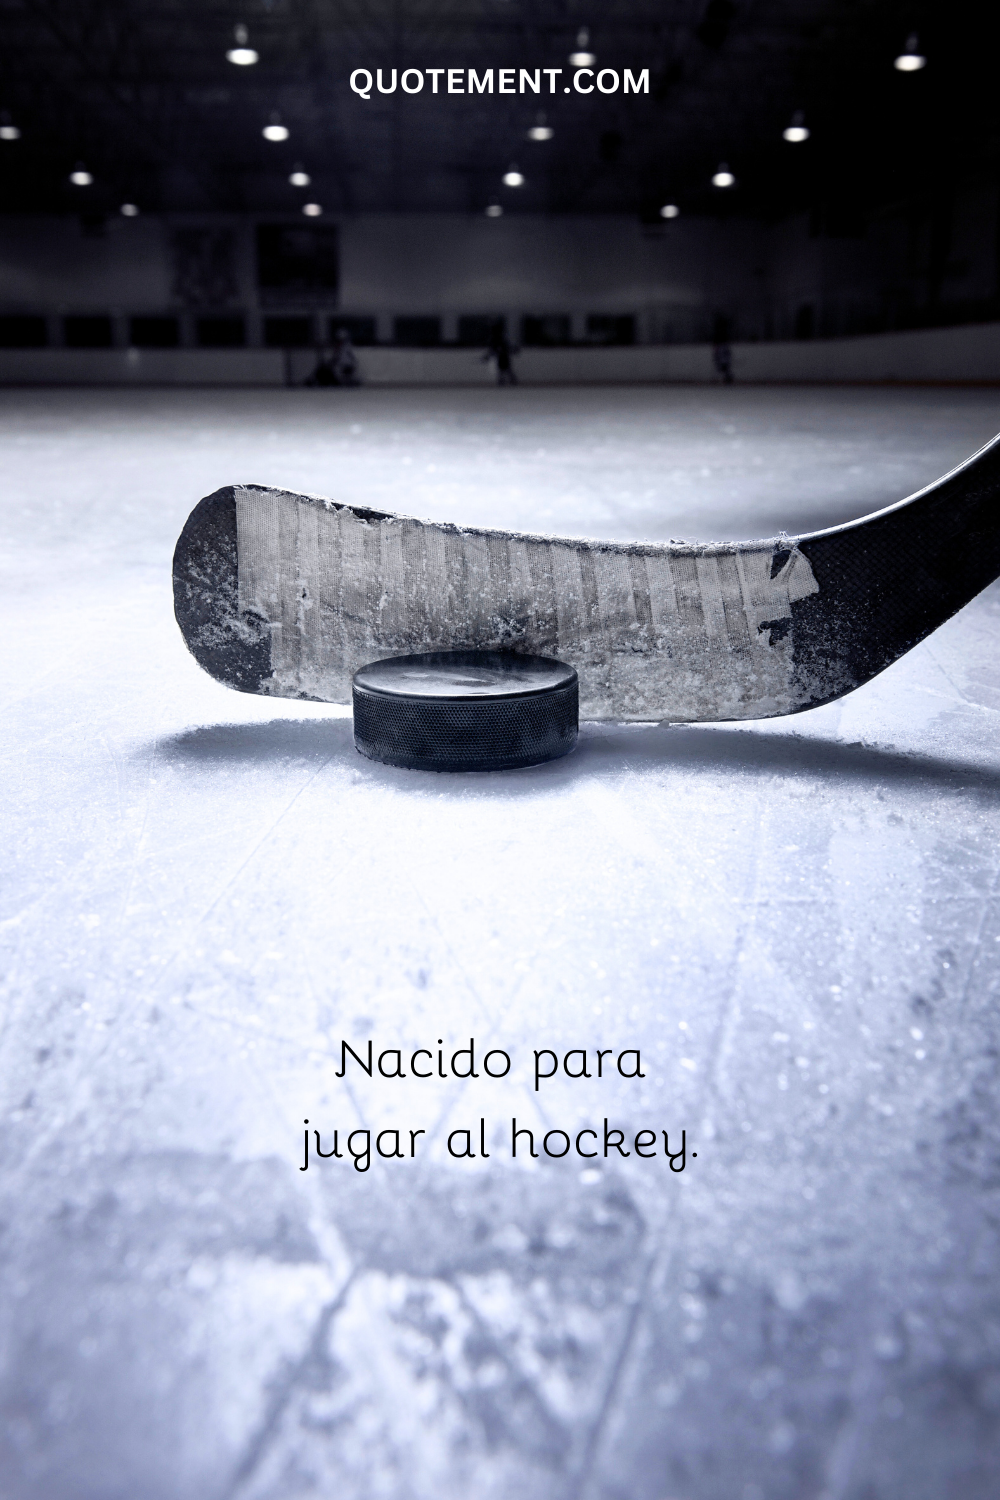 Nacido para jugar al hockey.